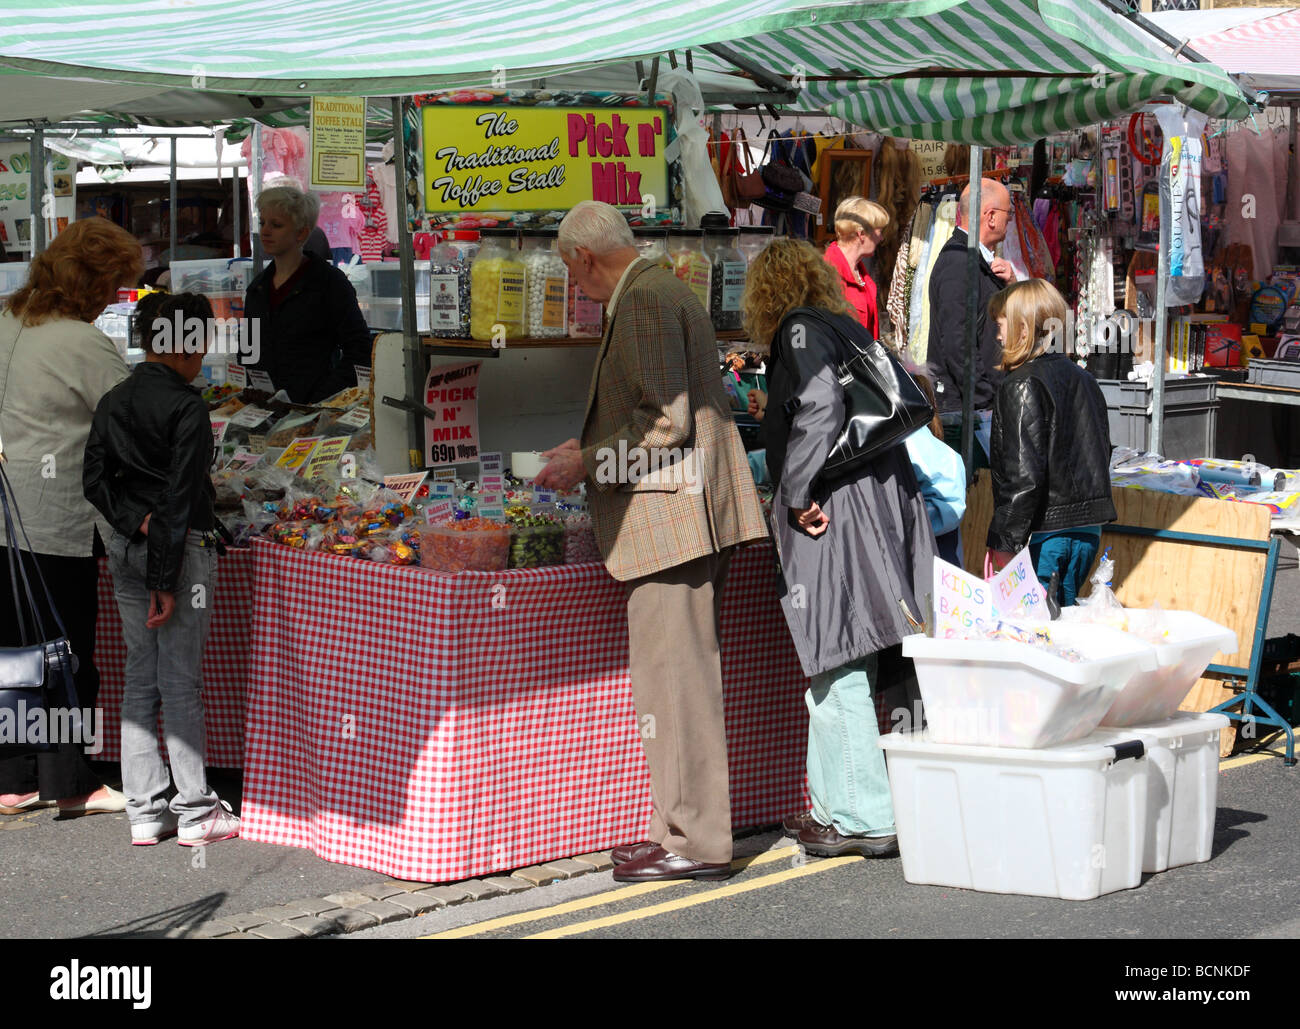 Ein Pick & Mix süße Stall in Bakewell Markt, Derbyshire, England, U.K Stockfoto